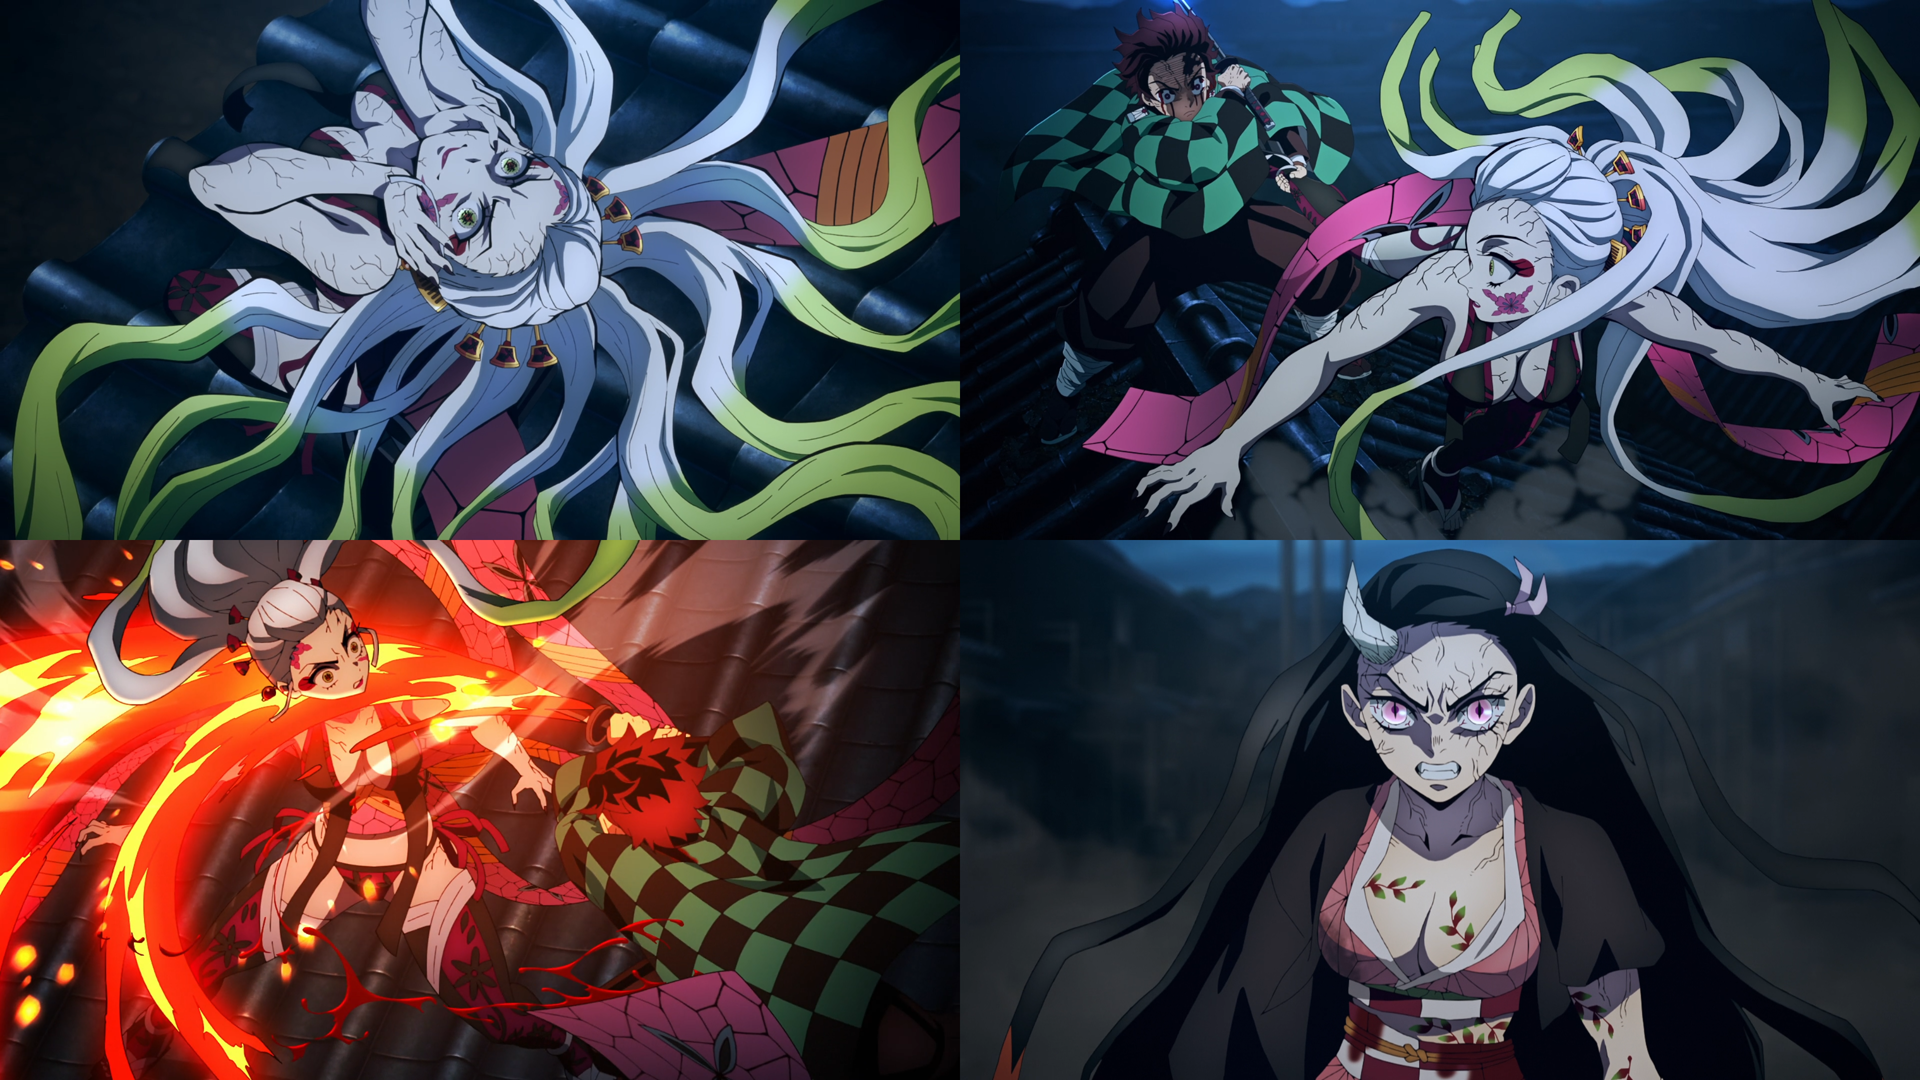 NEZUKO POPPED OFF! Demon Slayer: Kimetsu no Yaiba Season 2 Episode